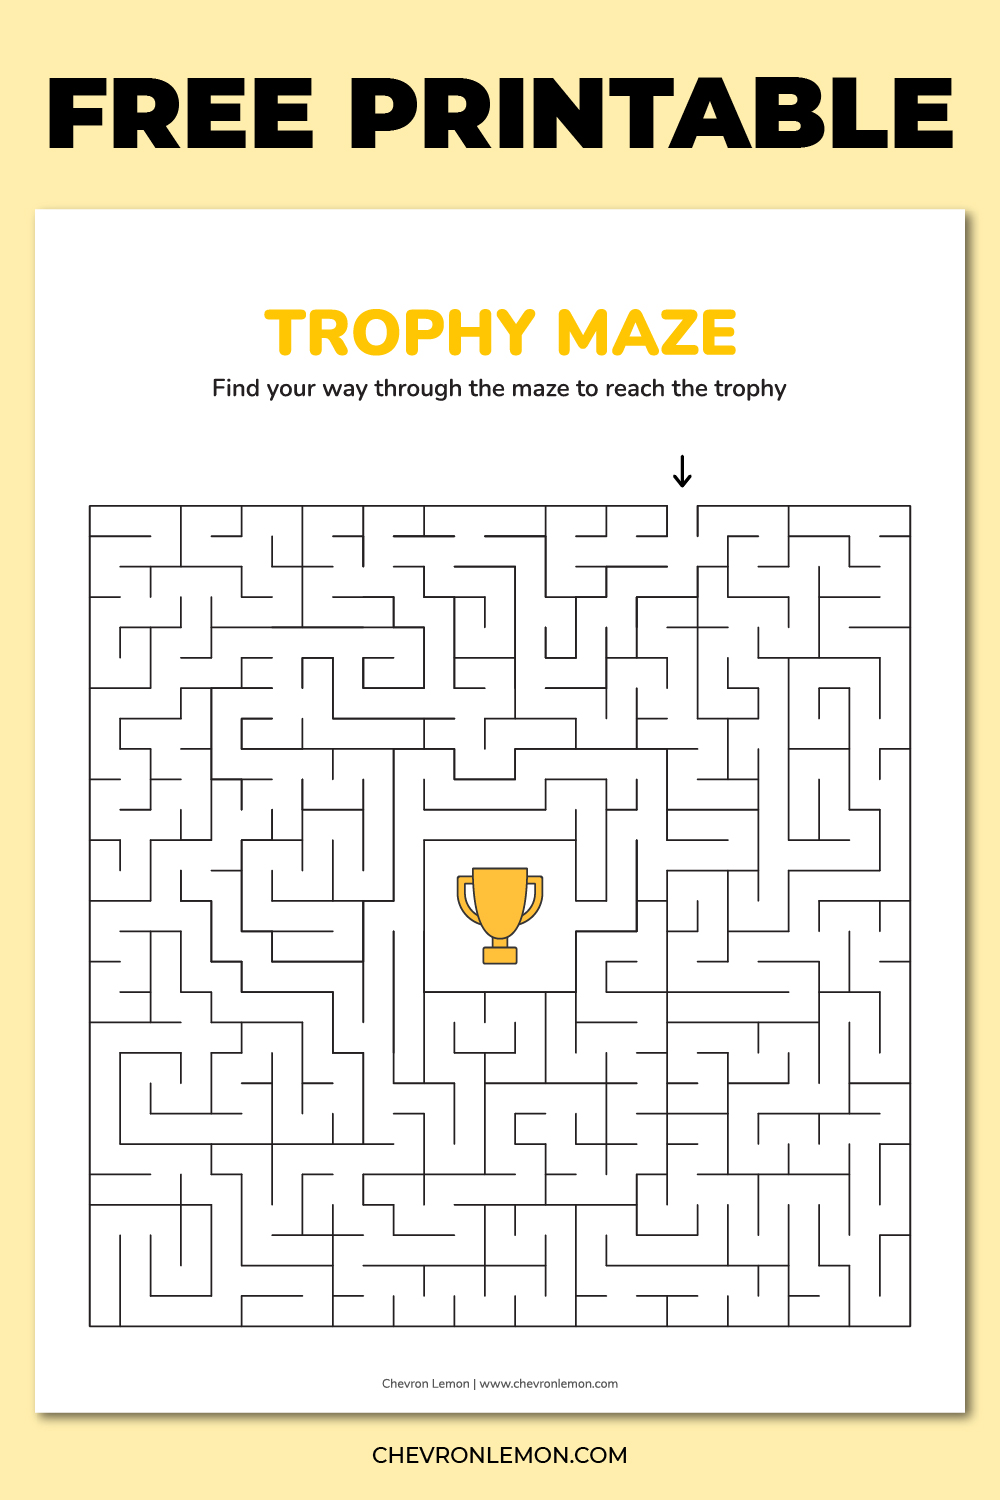 Trophy maze